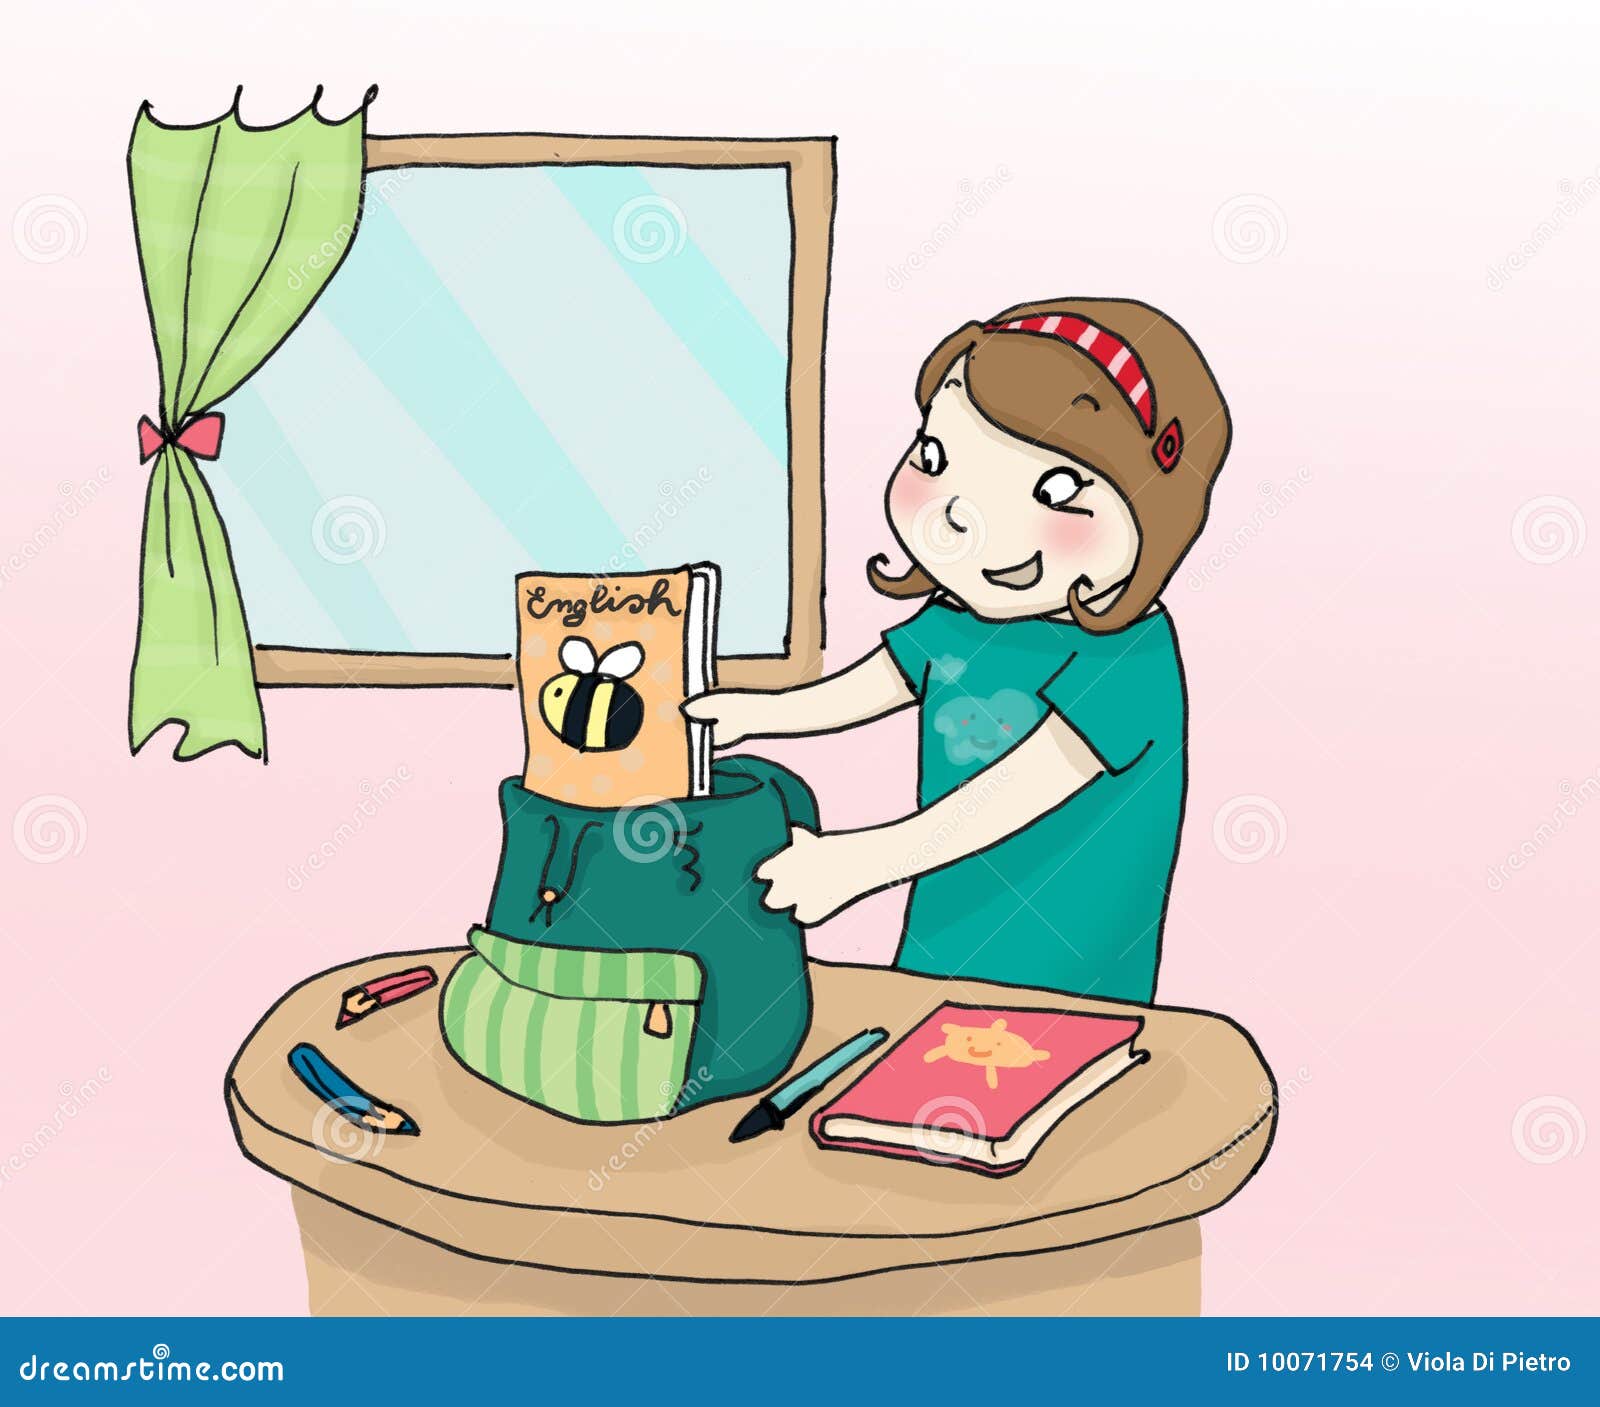 Schoolbag Stock Illustrations – 21,593 Schoolbag Stock